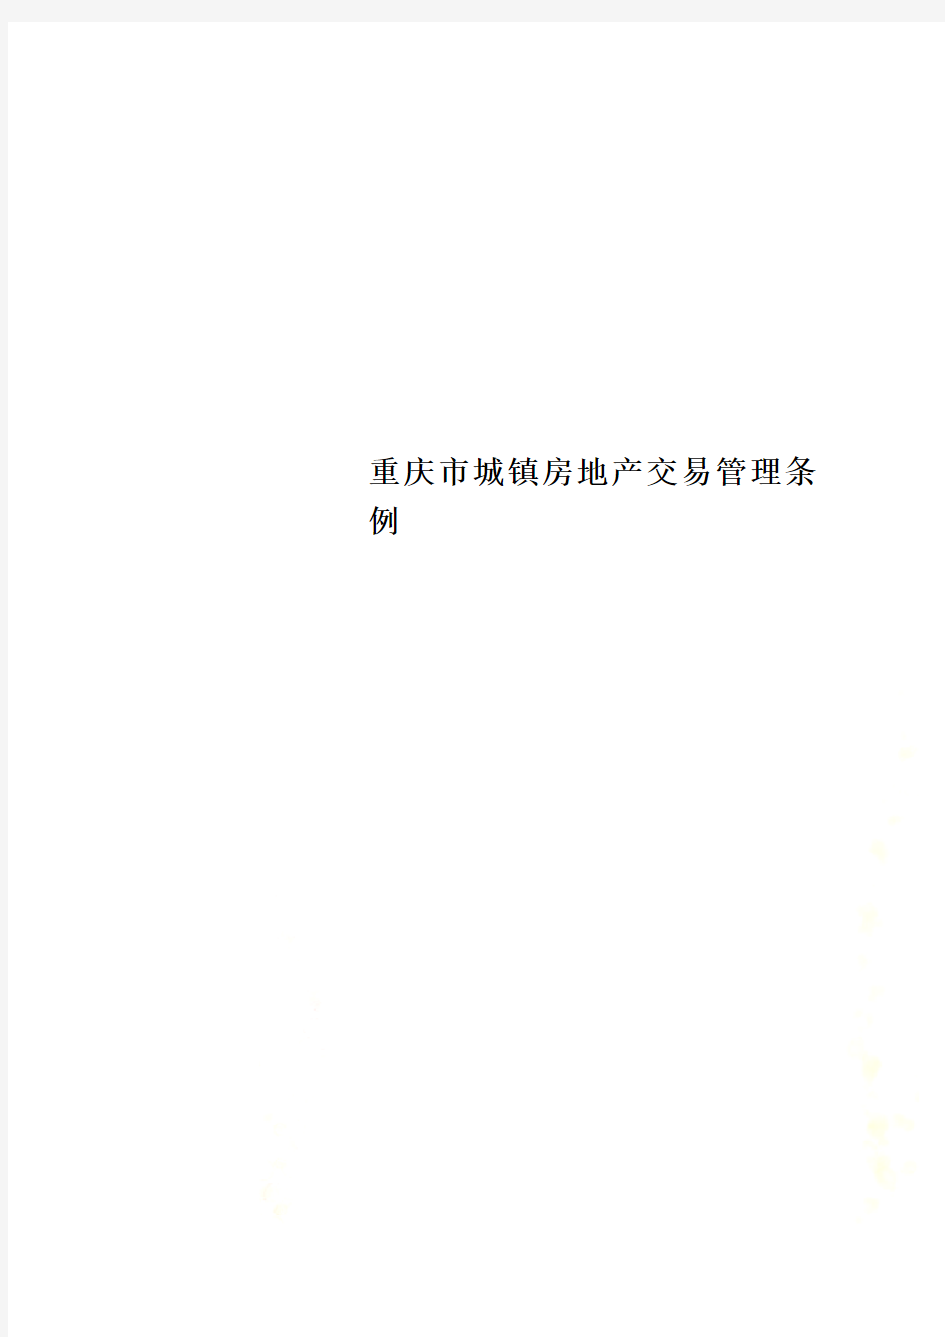 重庆市城镇房地产交易管理条例